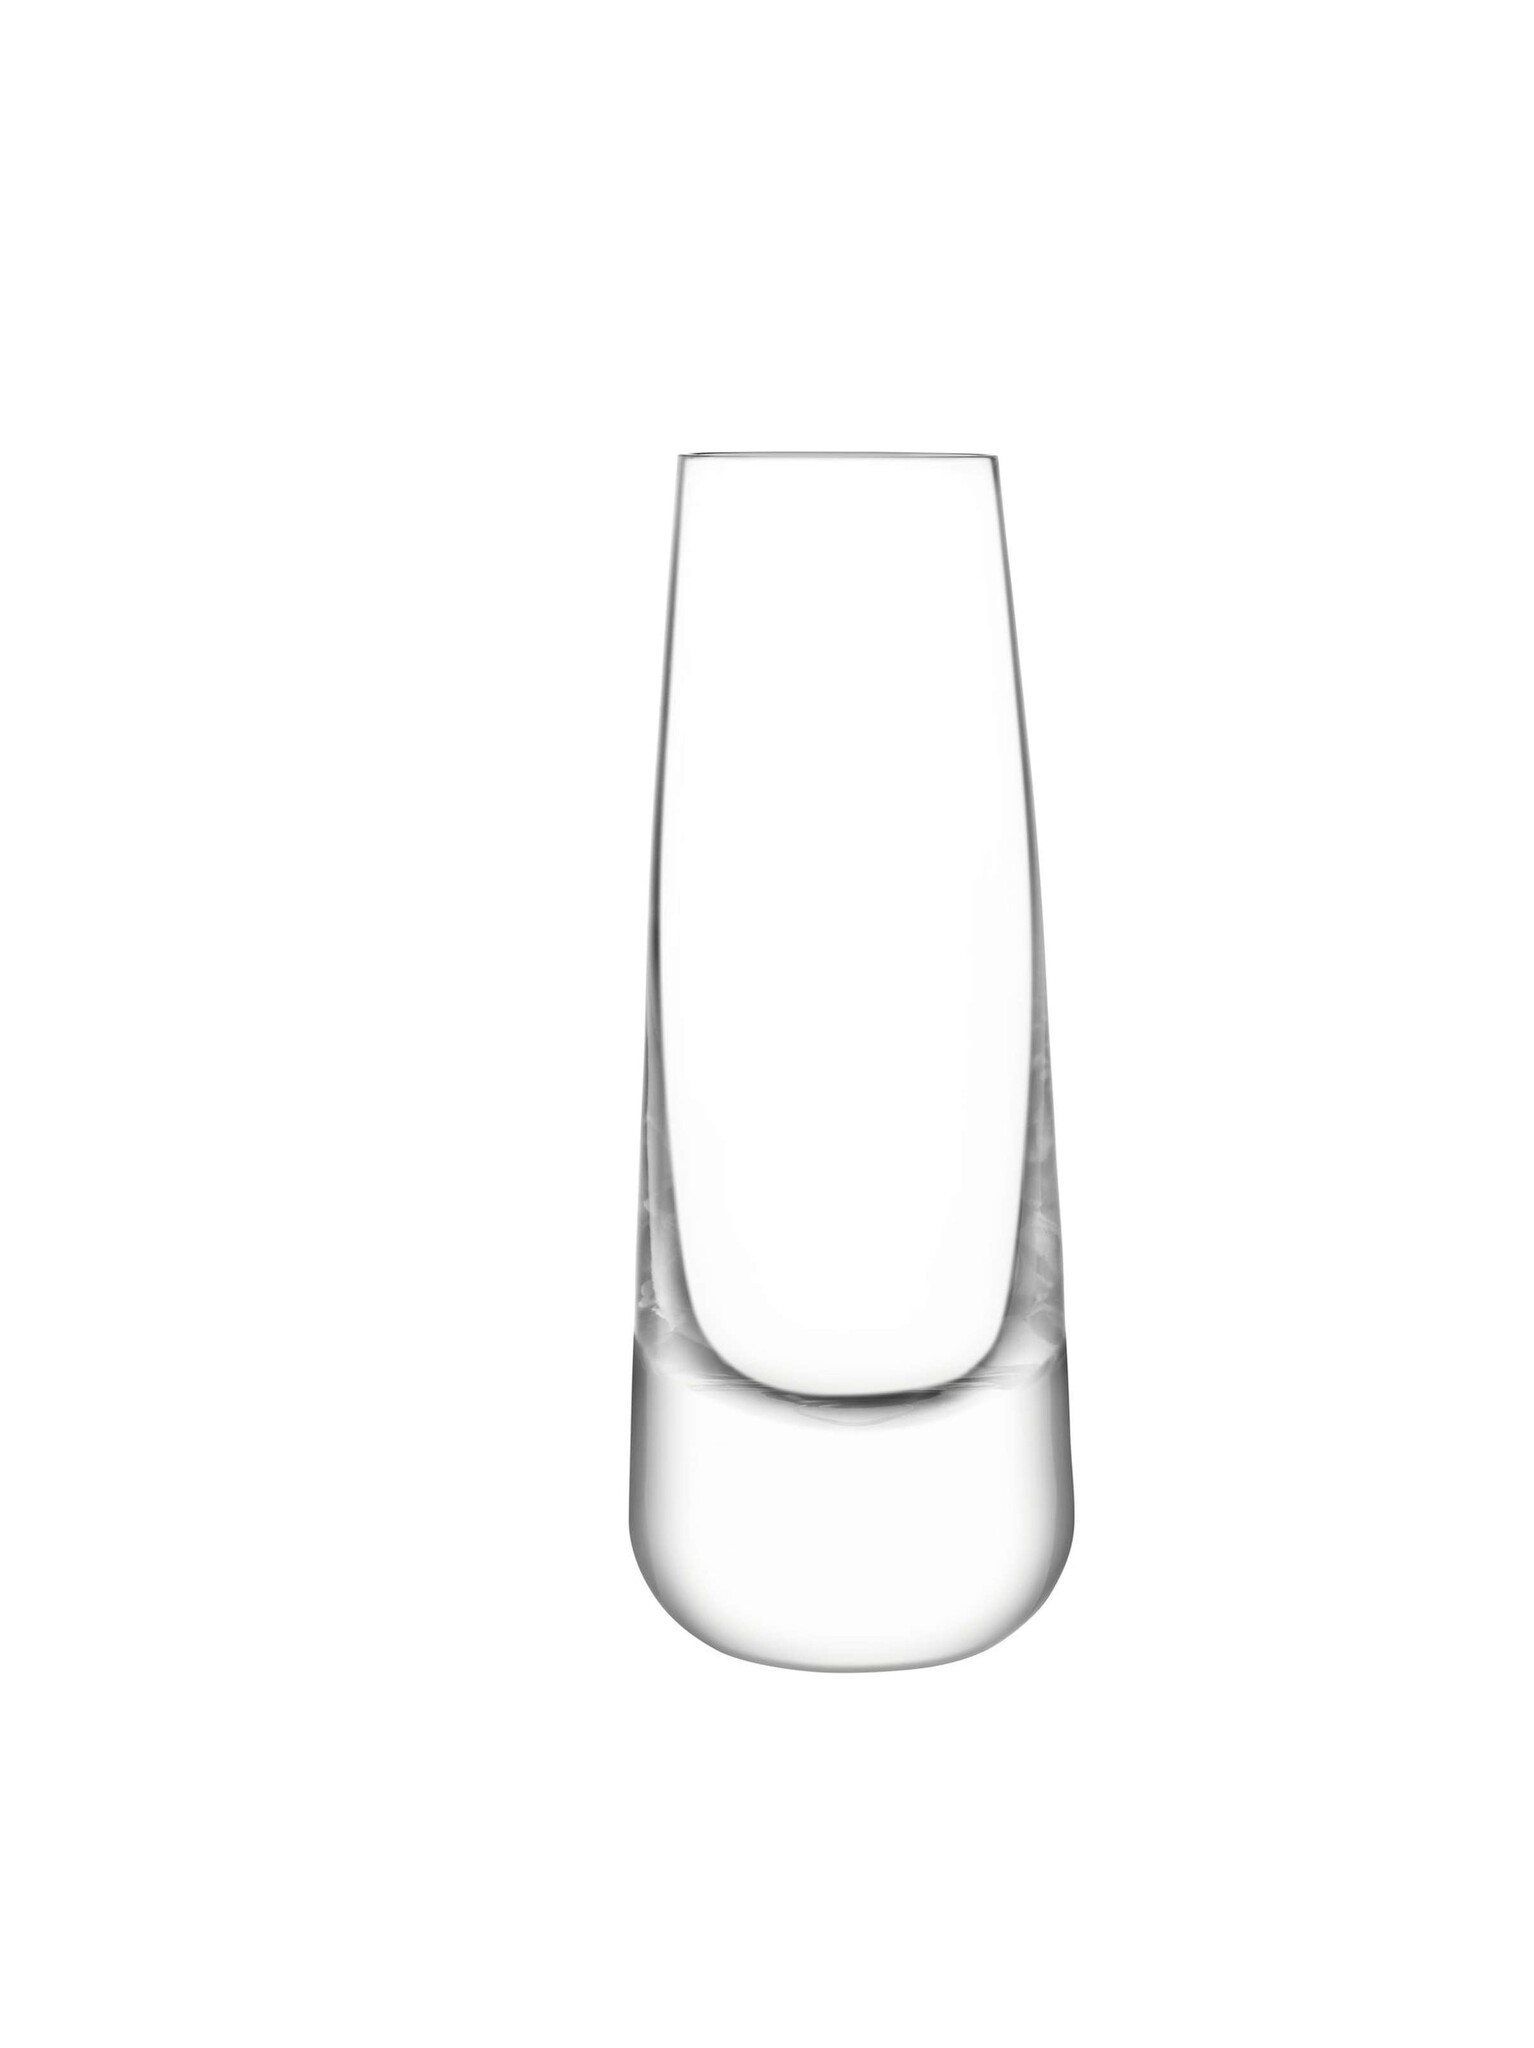 L.S.A. Bar Culture Longdrinkglas 310 ml Set van 2 Stuks